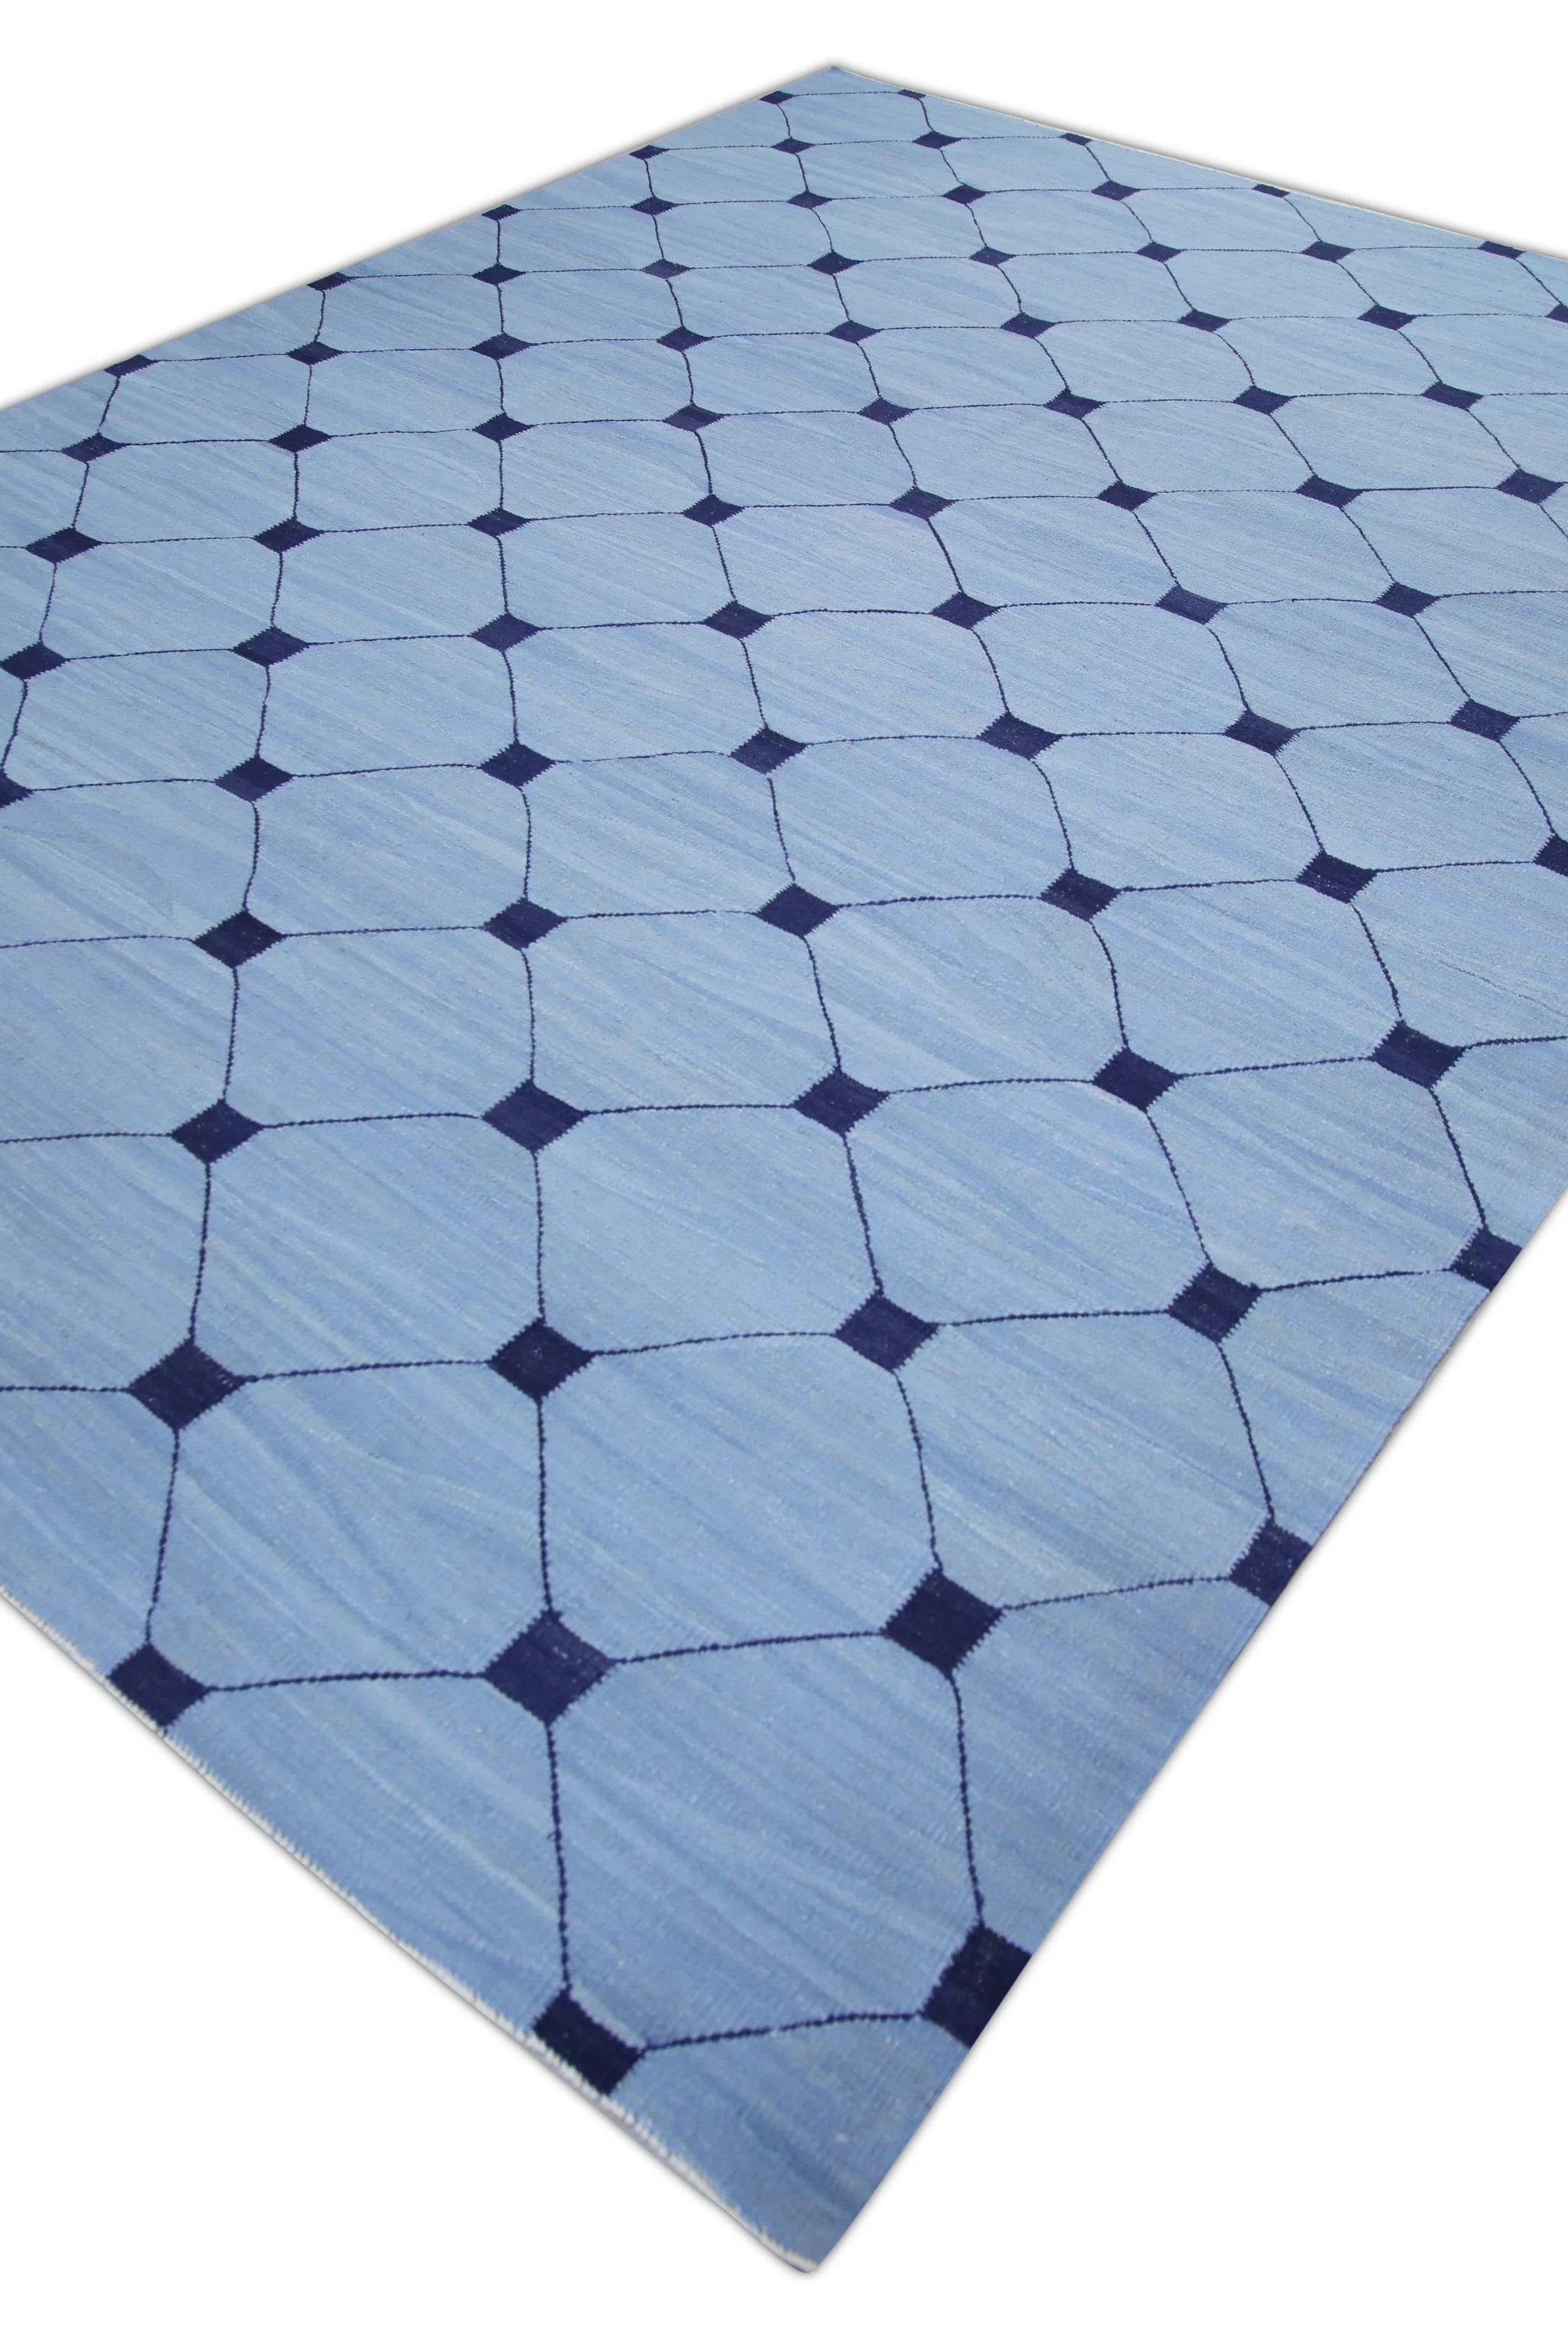 Modern Blue Flatweave Handmade Wool Rug in Navy Geometric Design 9'2